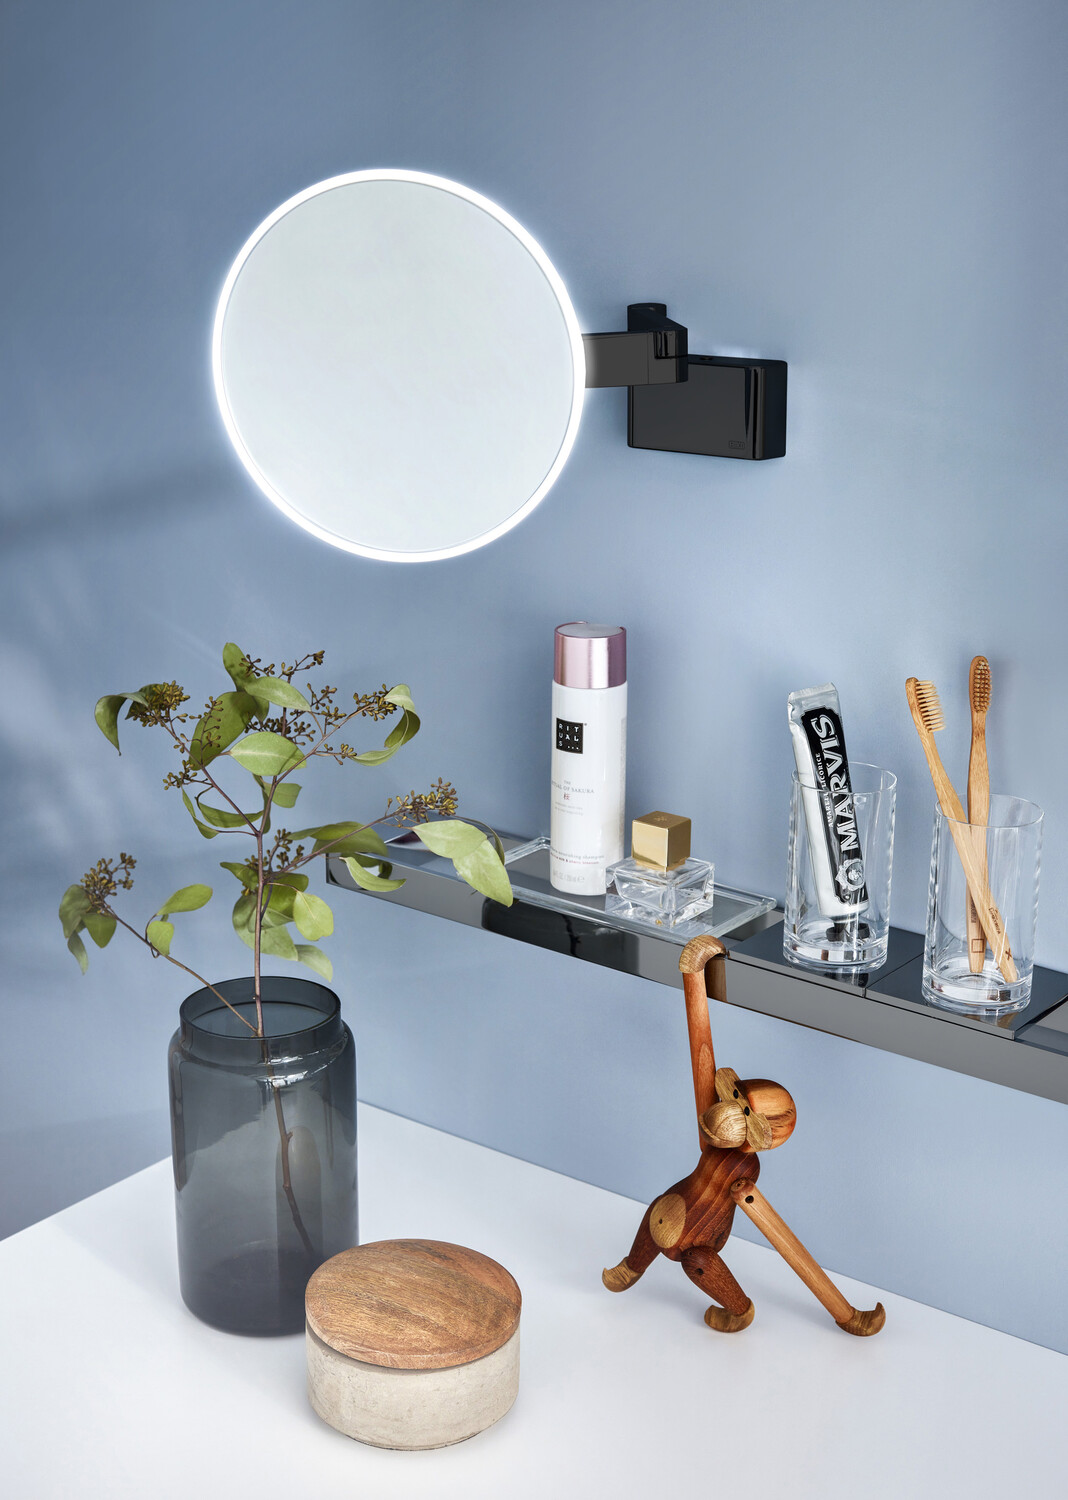 LED-Kosmetikspiegel evo mit light system 2-armig, 5-fach, rund, Direktanschluss, 2 Schalter, Farbwechsel, dimmbar D: 209 mm, chrom